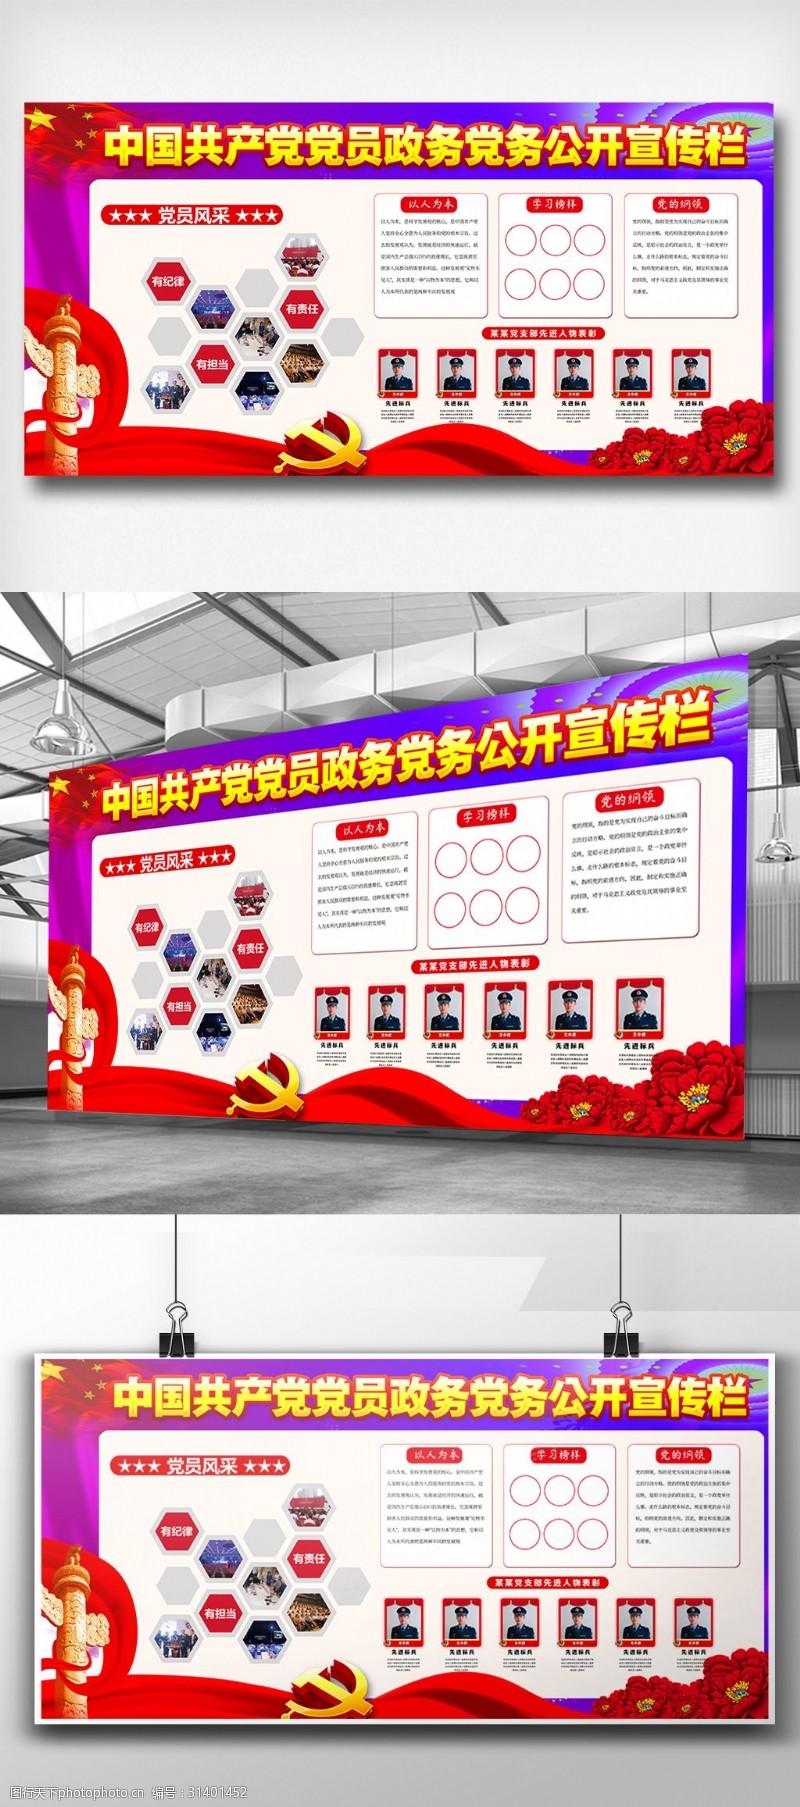 宣传栏模板高端中国共产党党员内容宣传栏设计